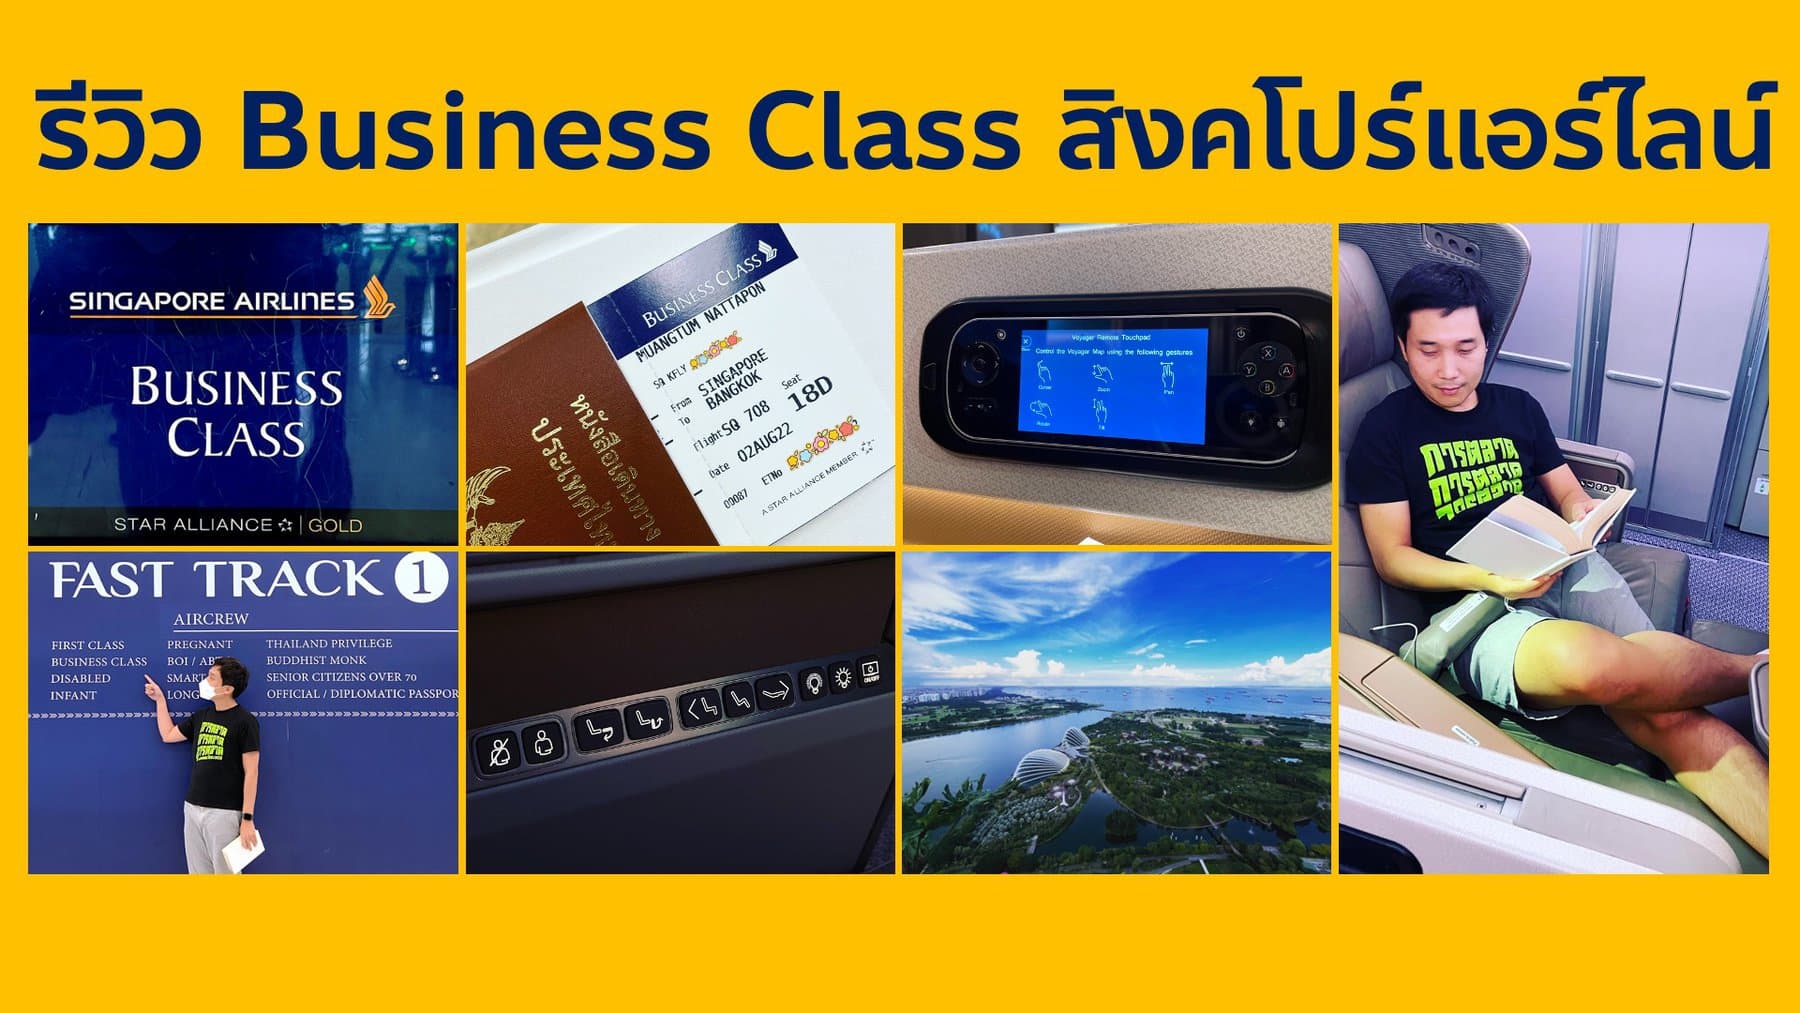 รีวิว Business Class สายการบินสิงคโปร์แอร์ไลน์ กับ Brand Experience